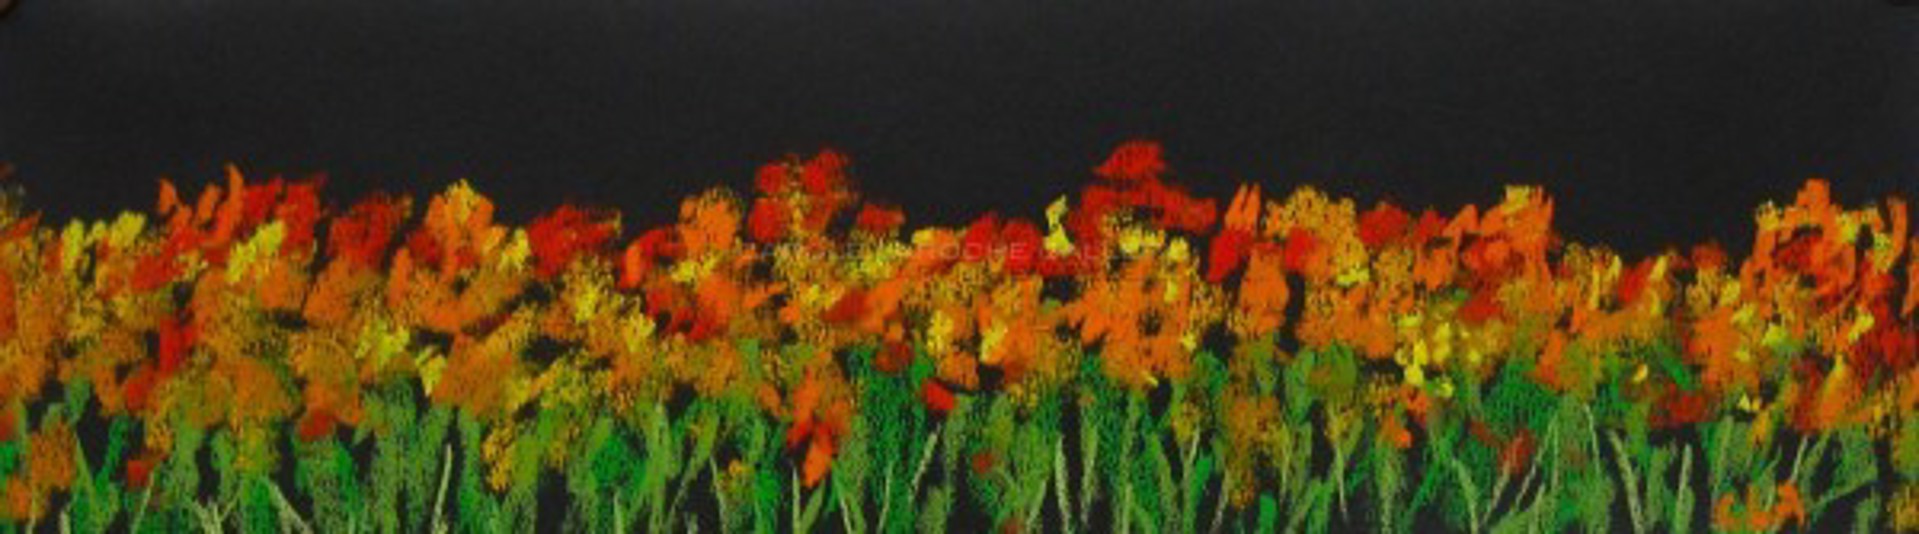 Field of Poppies  by Carole LaRoche